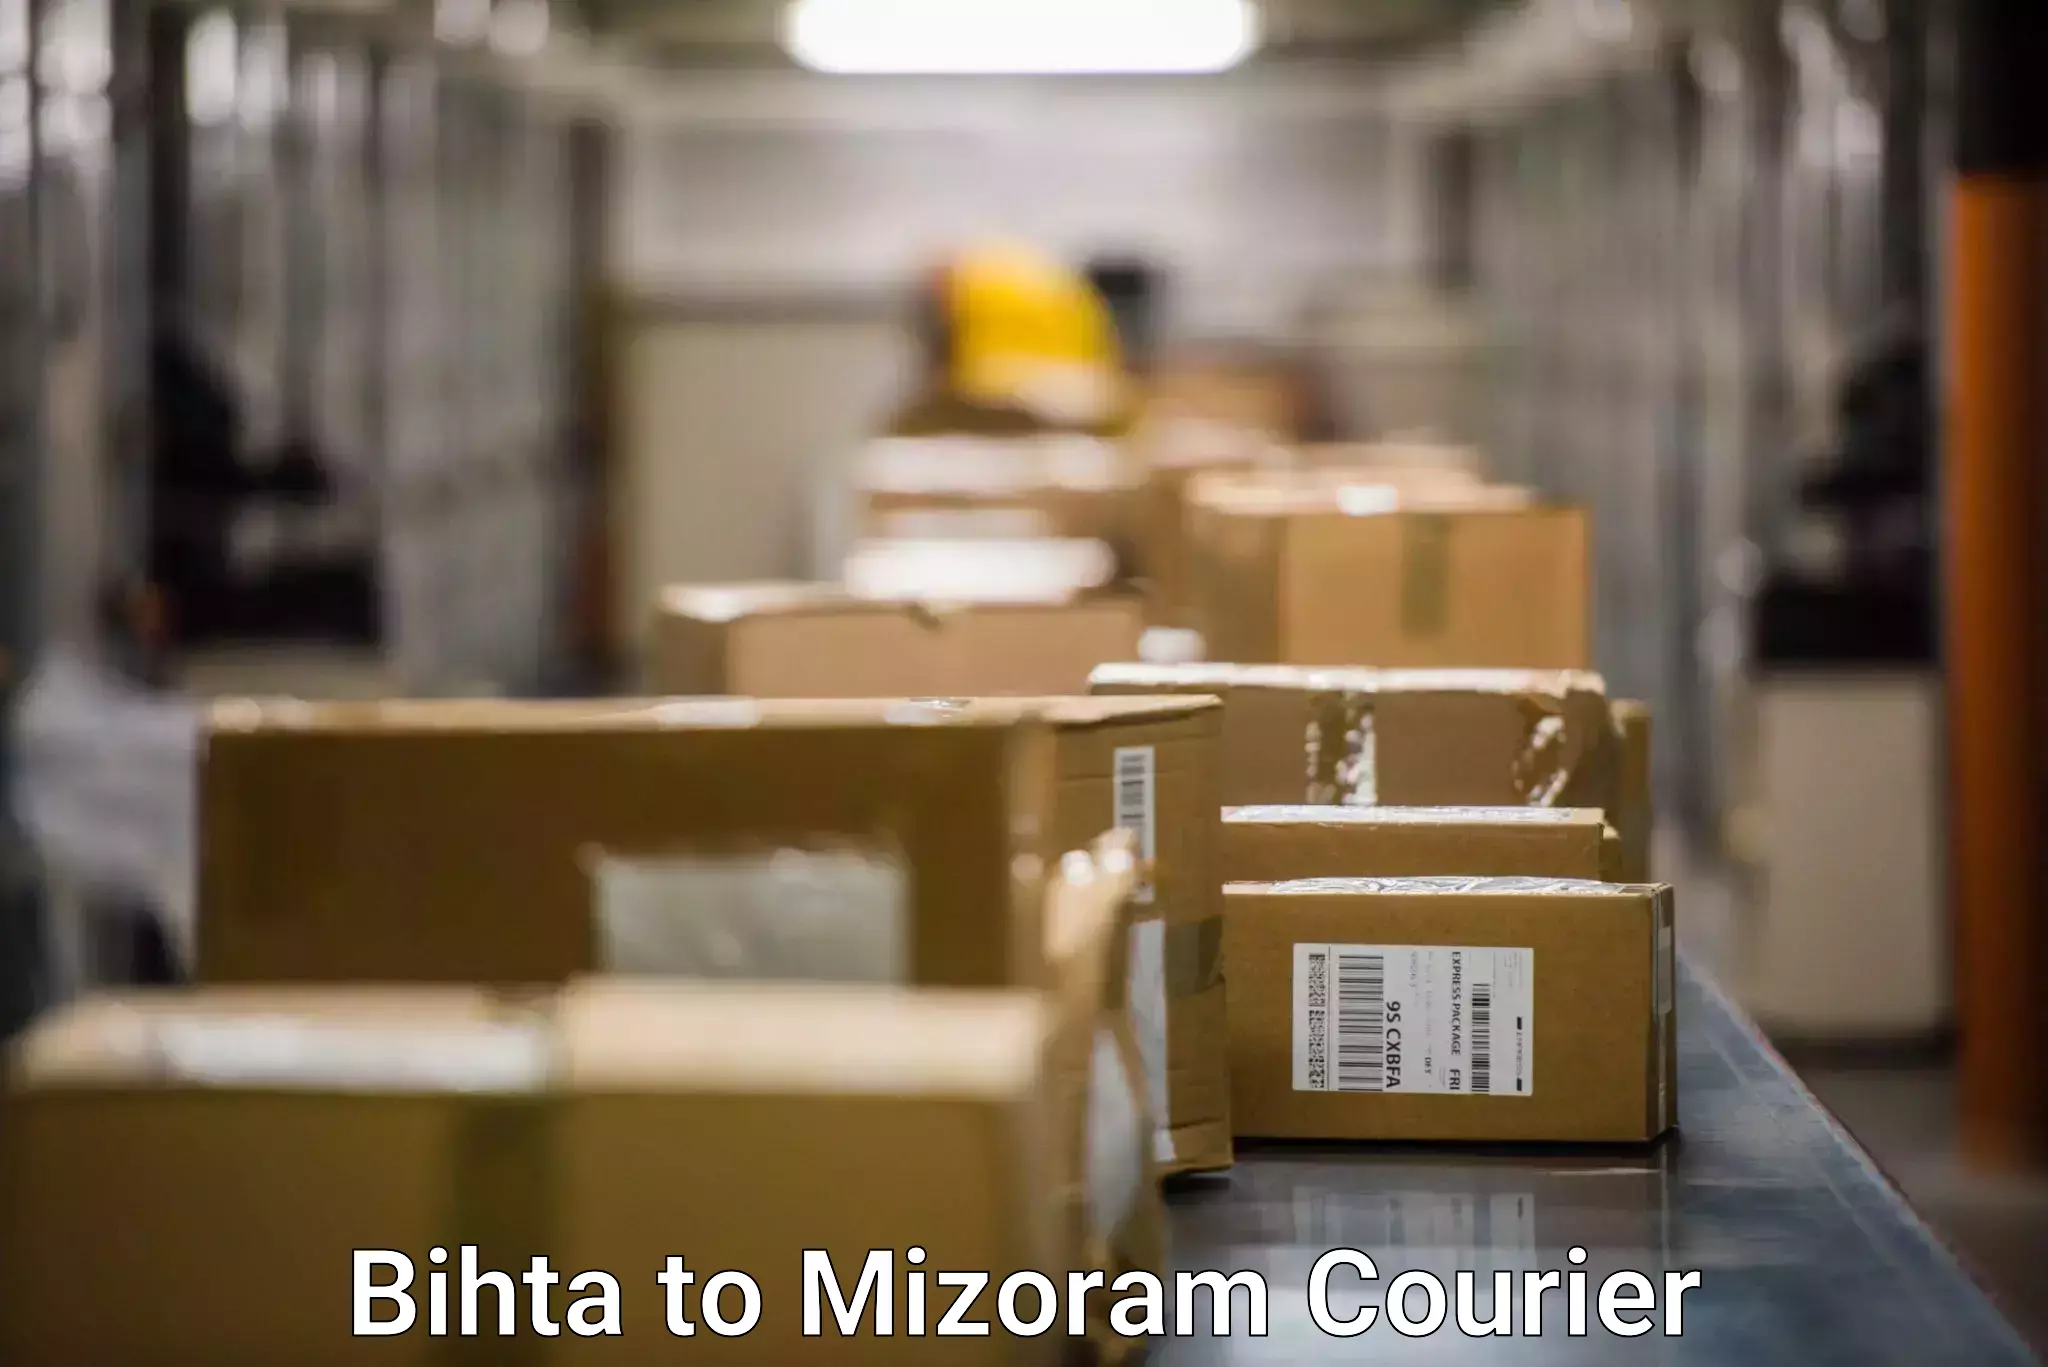 Express courier facilities Bihta to Mizoram